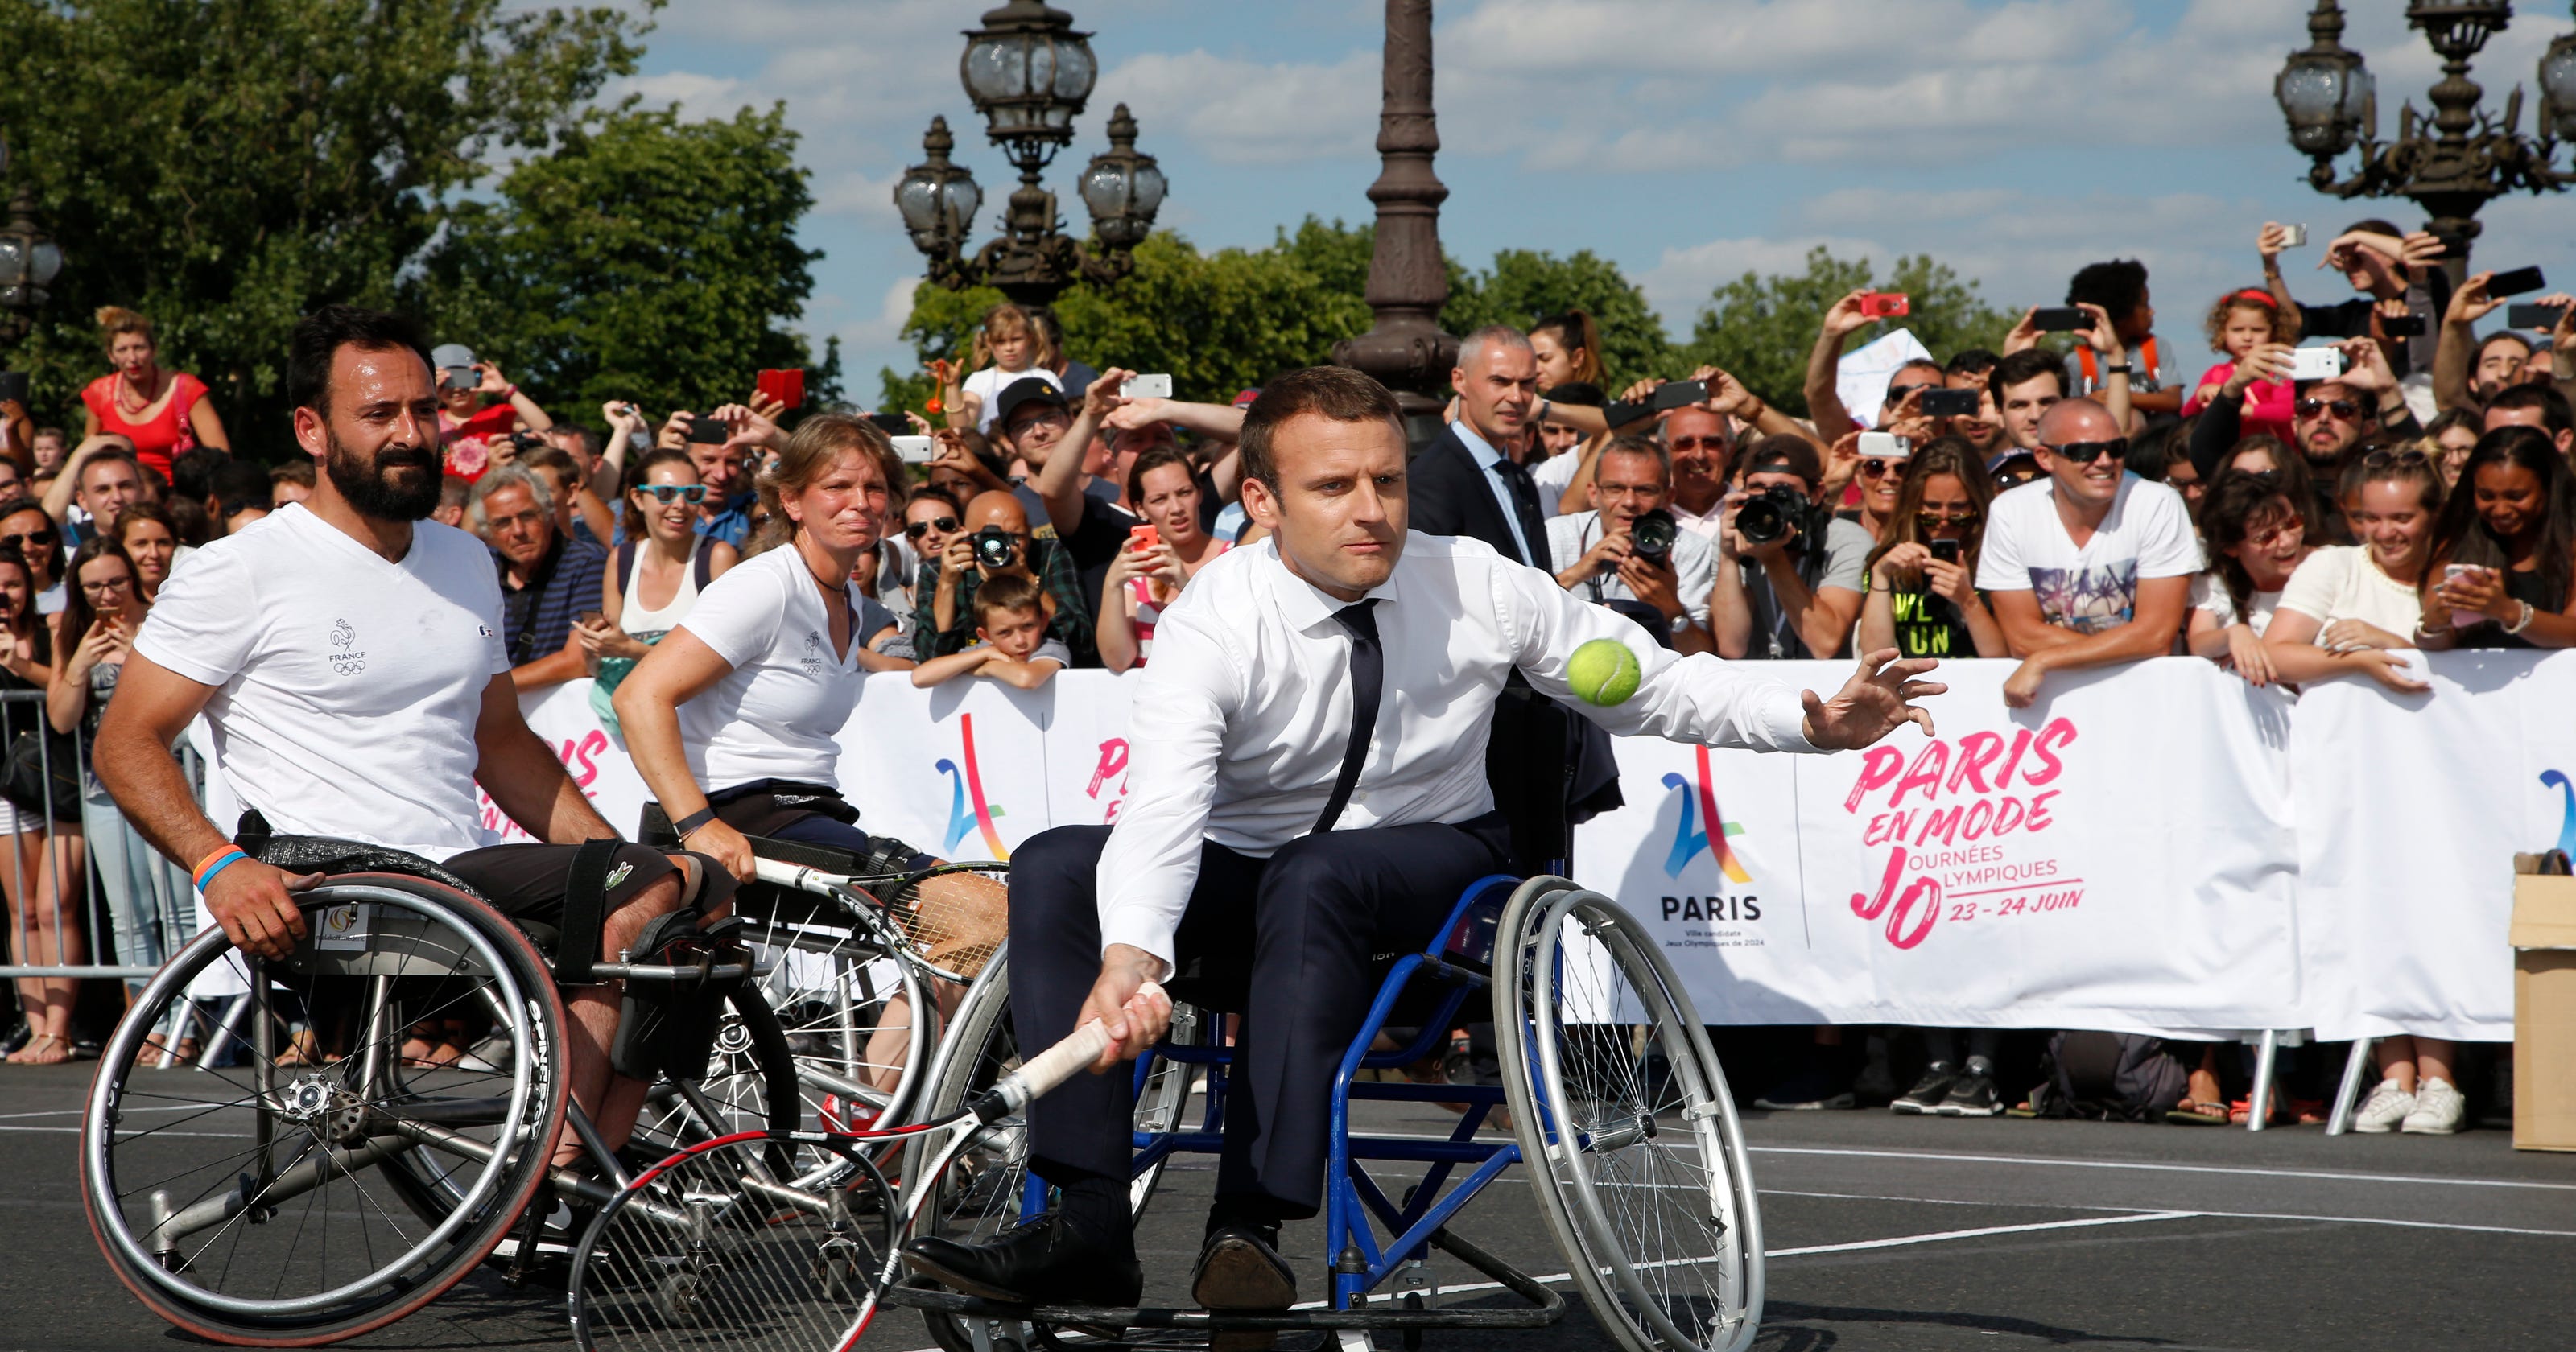 Macron promotes Paris 2024 Olympic bid playing tennis